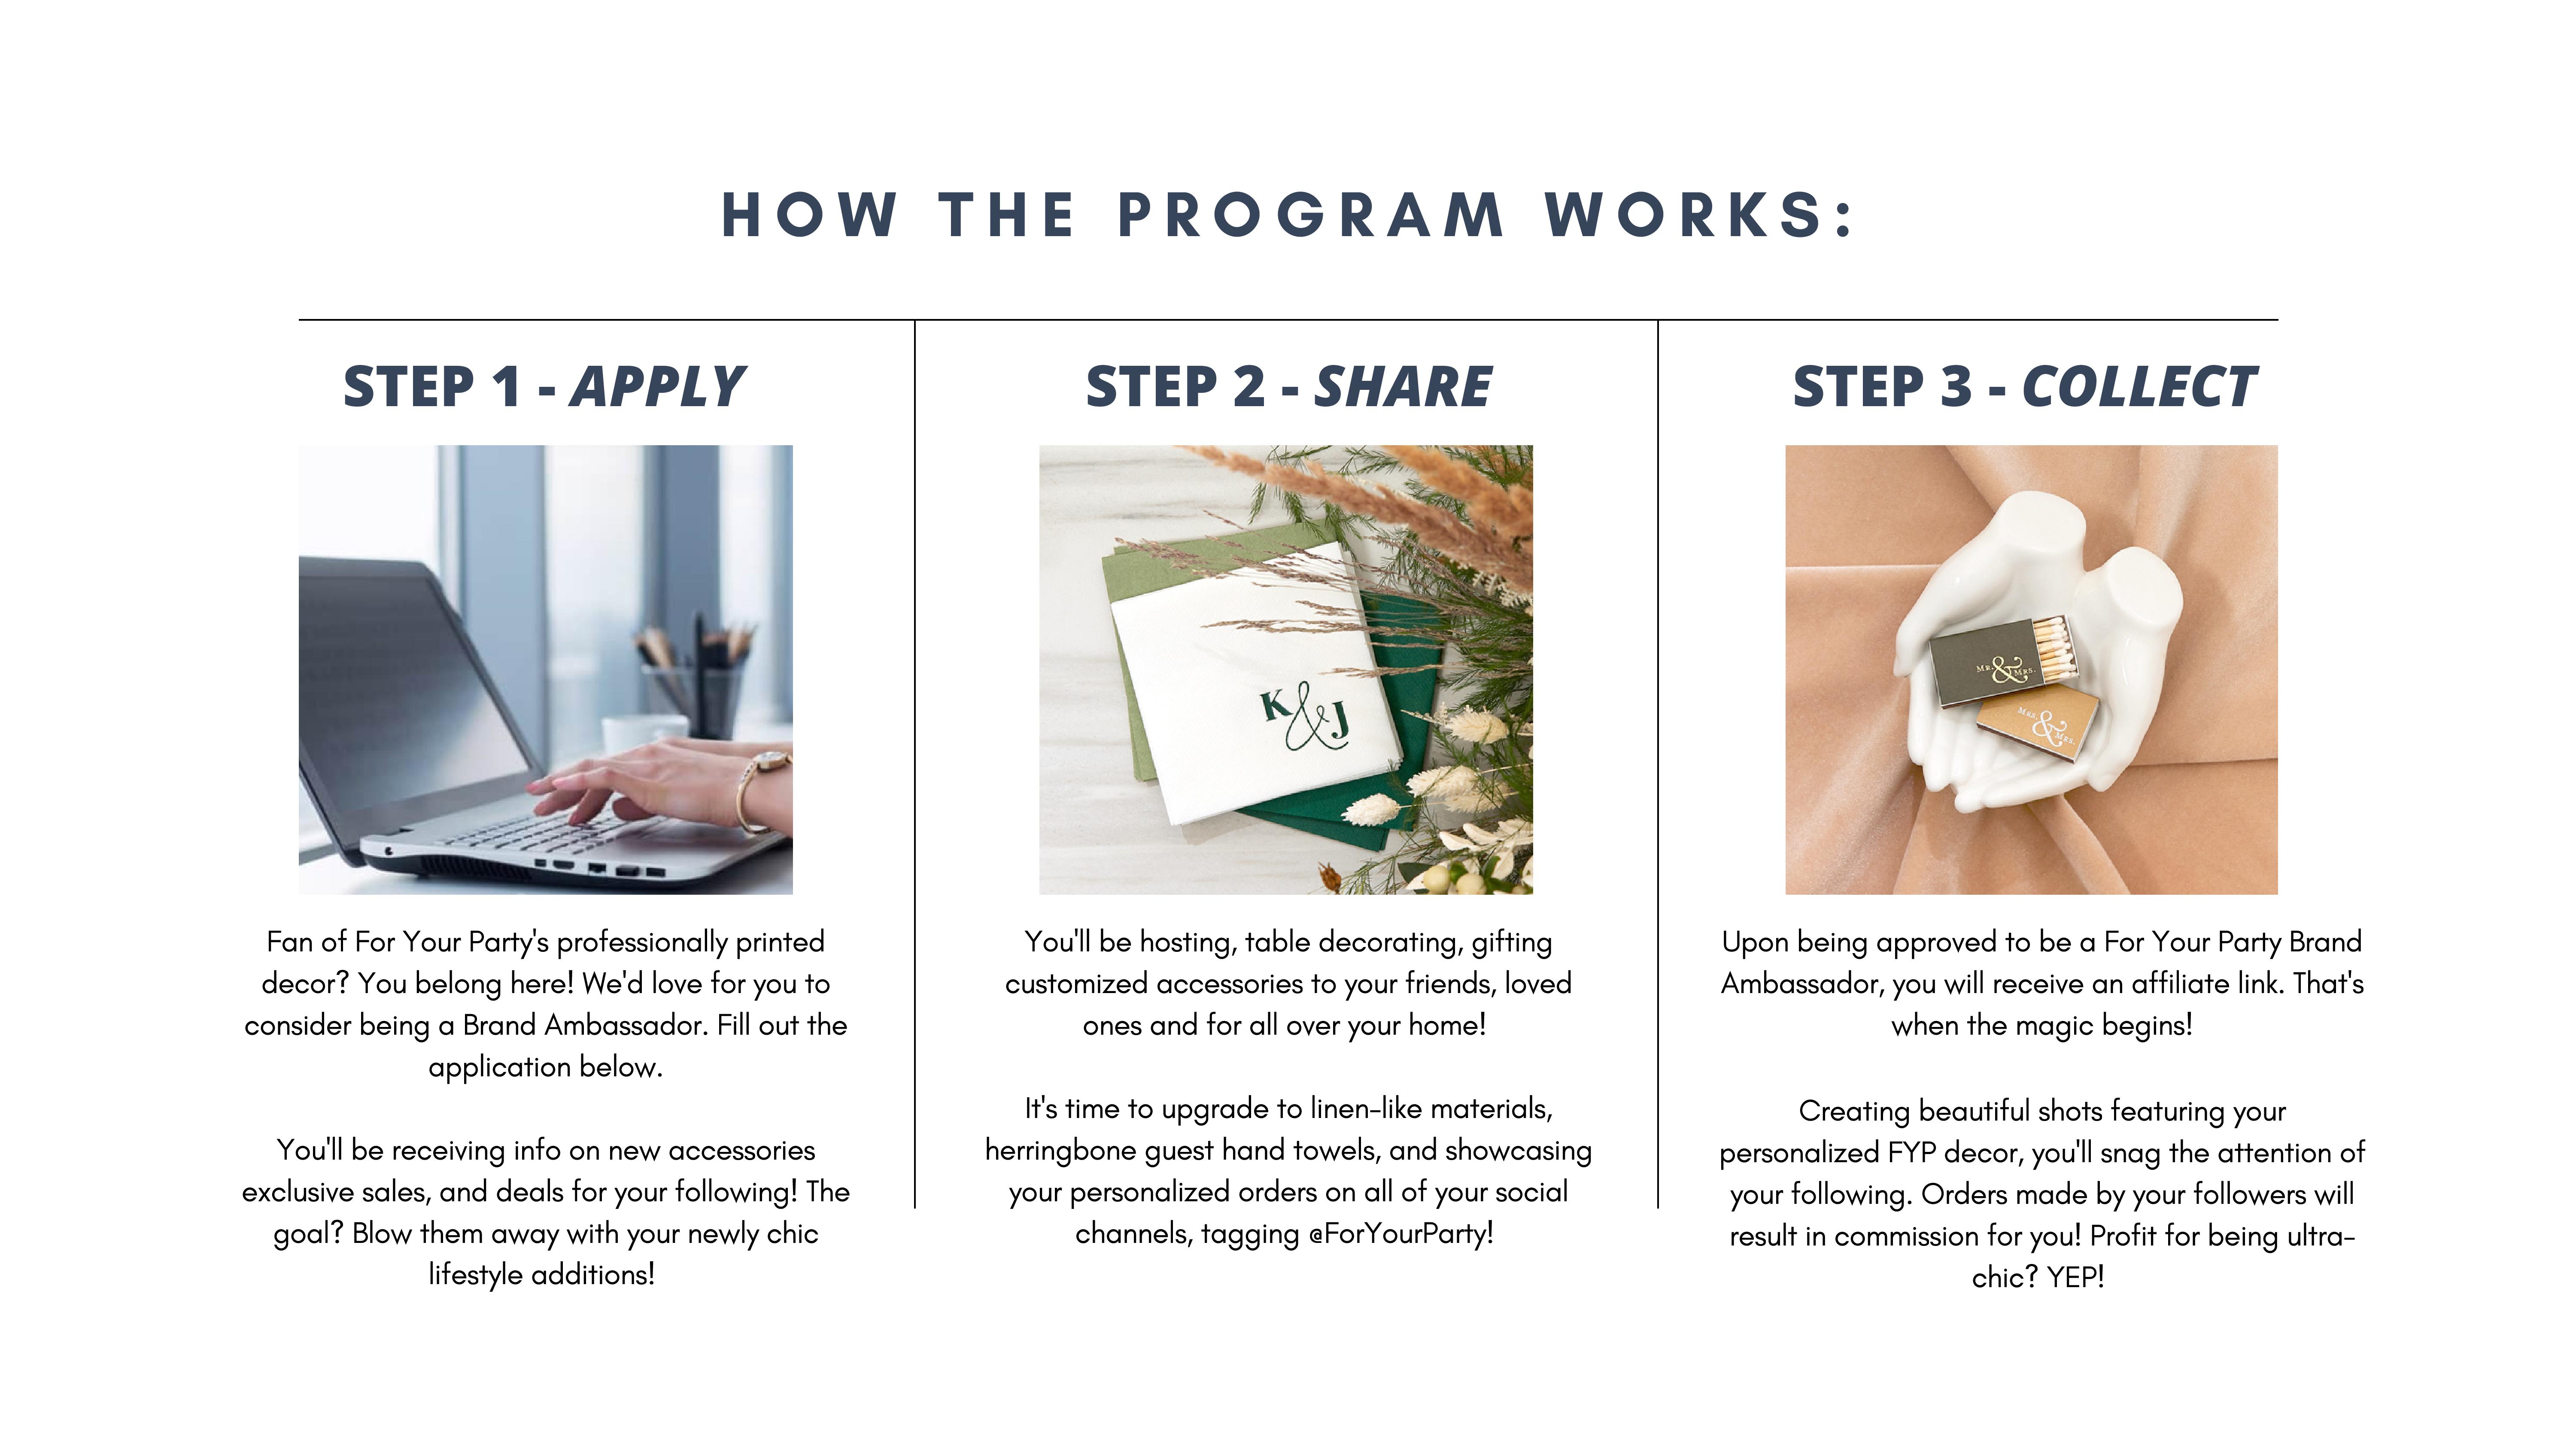 How to Start a Brand Ambassador Program from Scratch